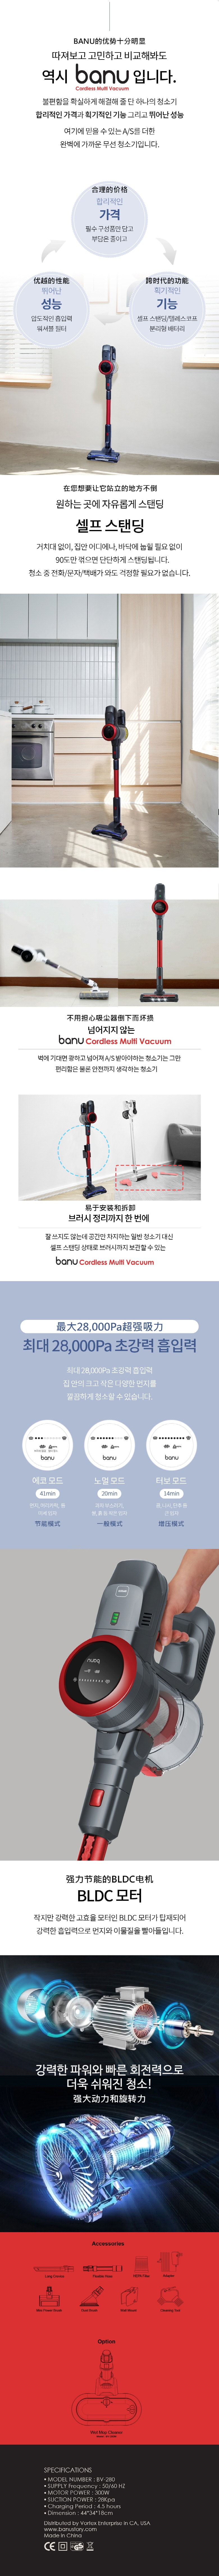 韓國 BANU 強力手持式吸塵器 比戴森更強 28 Kpa (可選拖把頭)